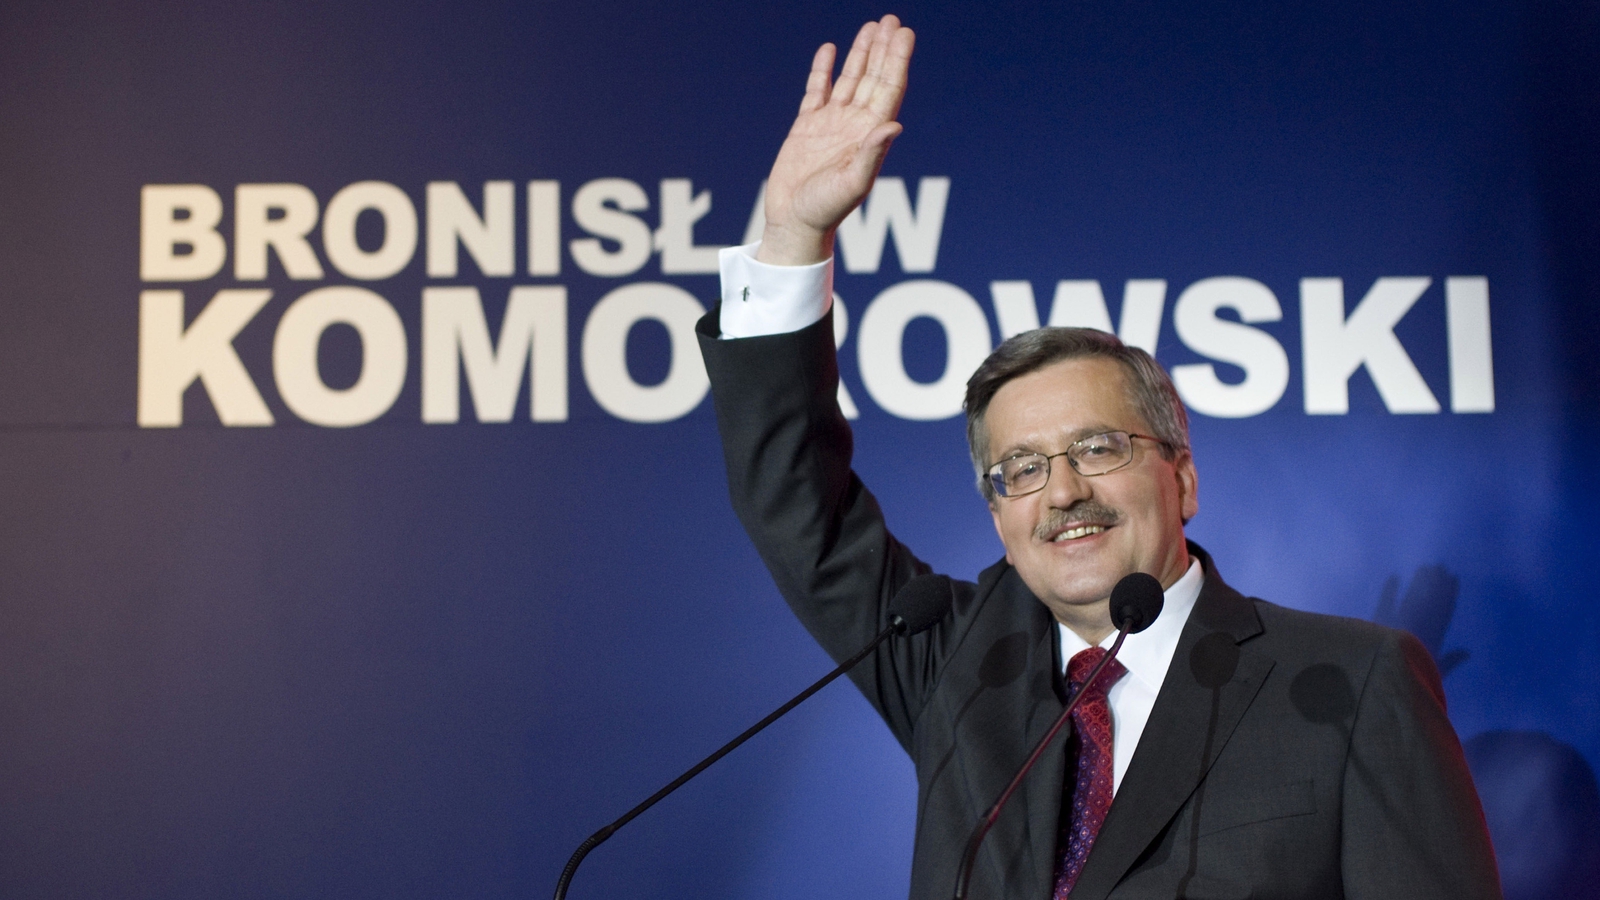 Komorowski Wins Tight Polish Election